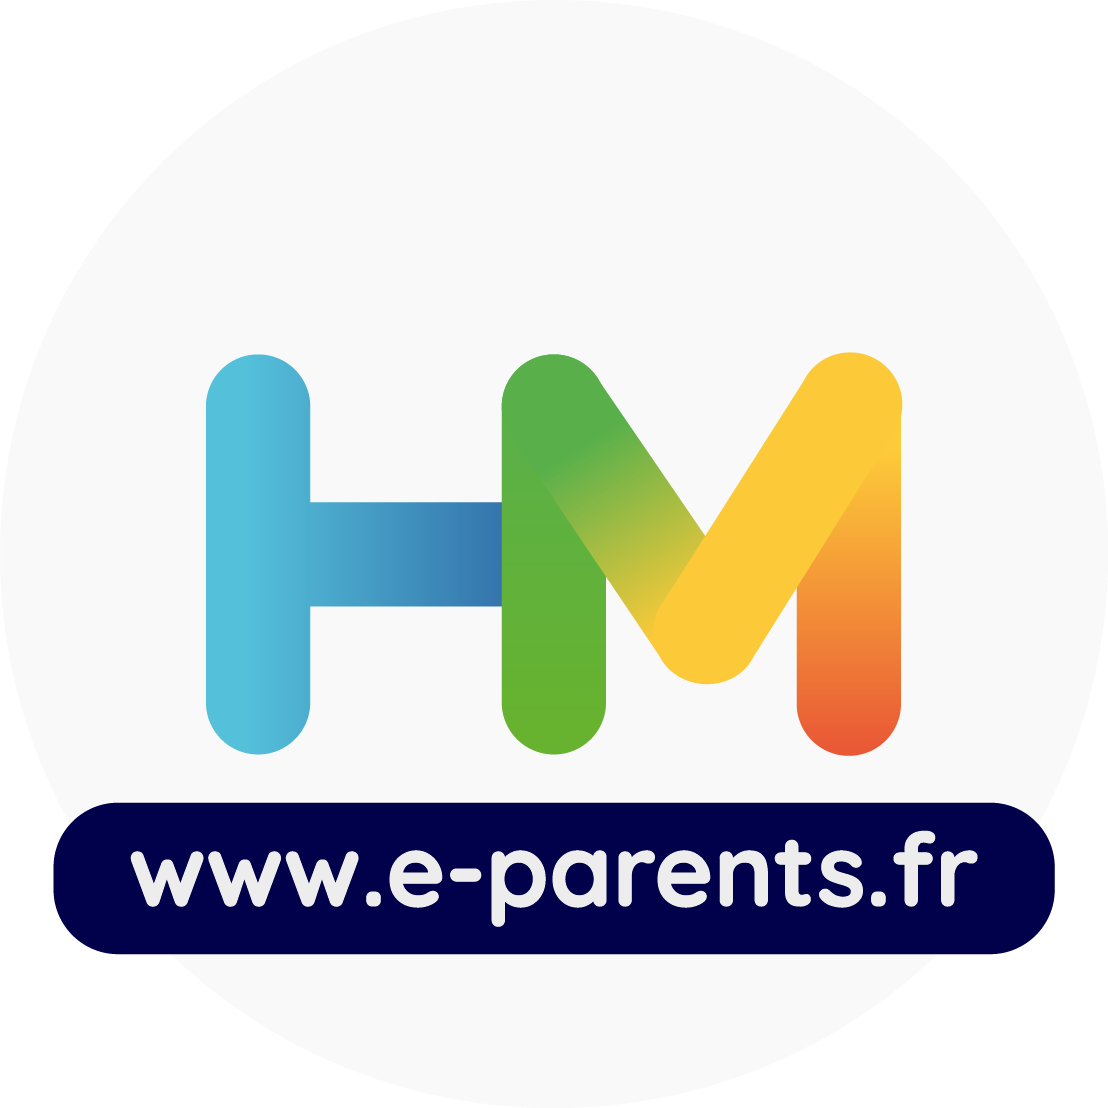 e-parents.fr